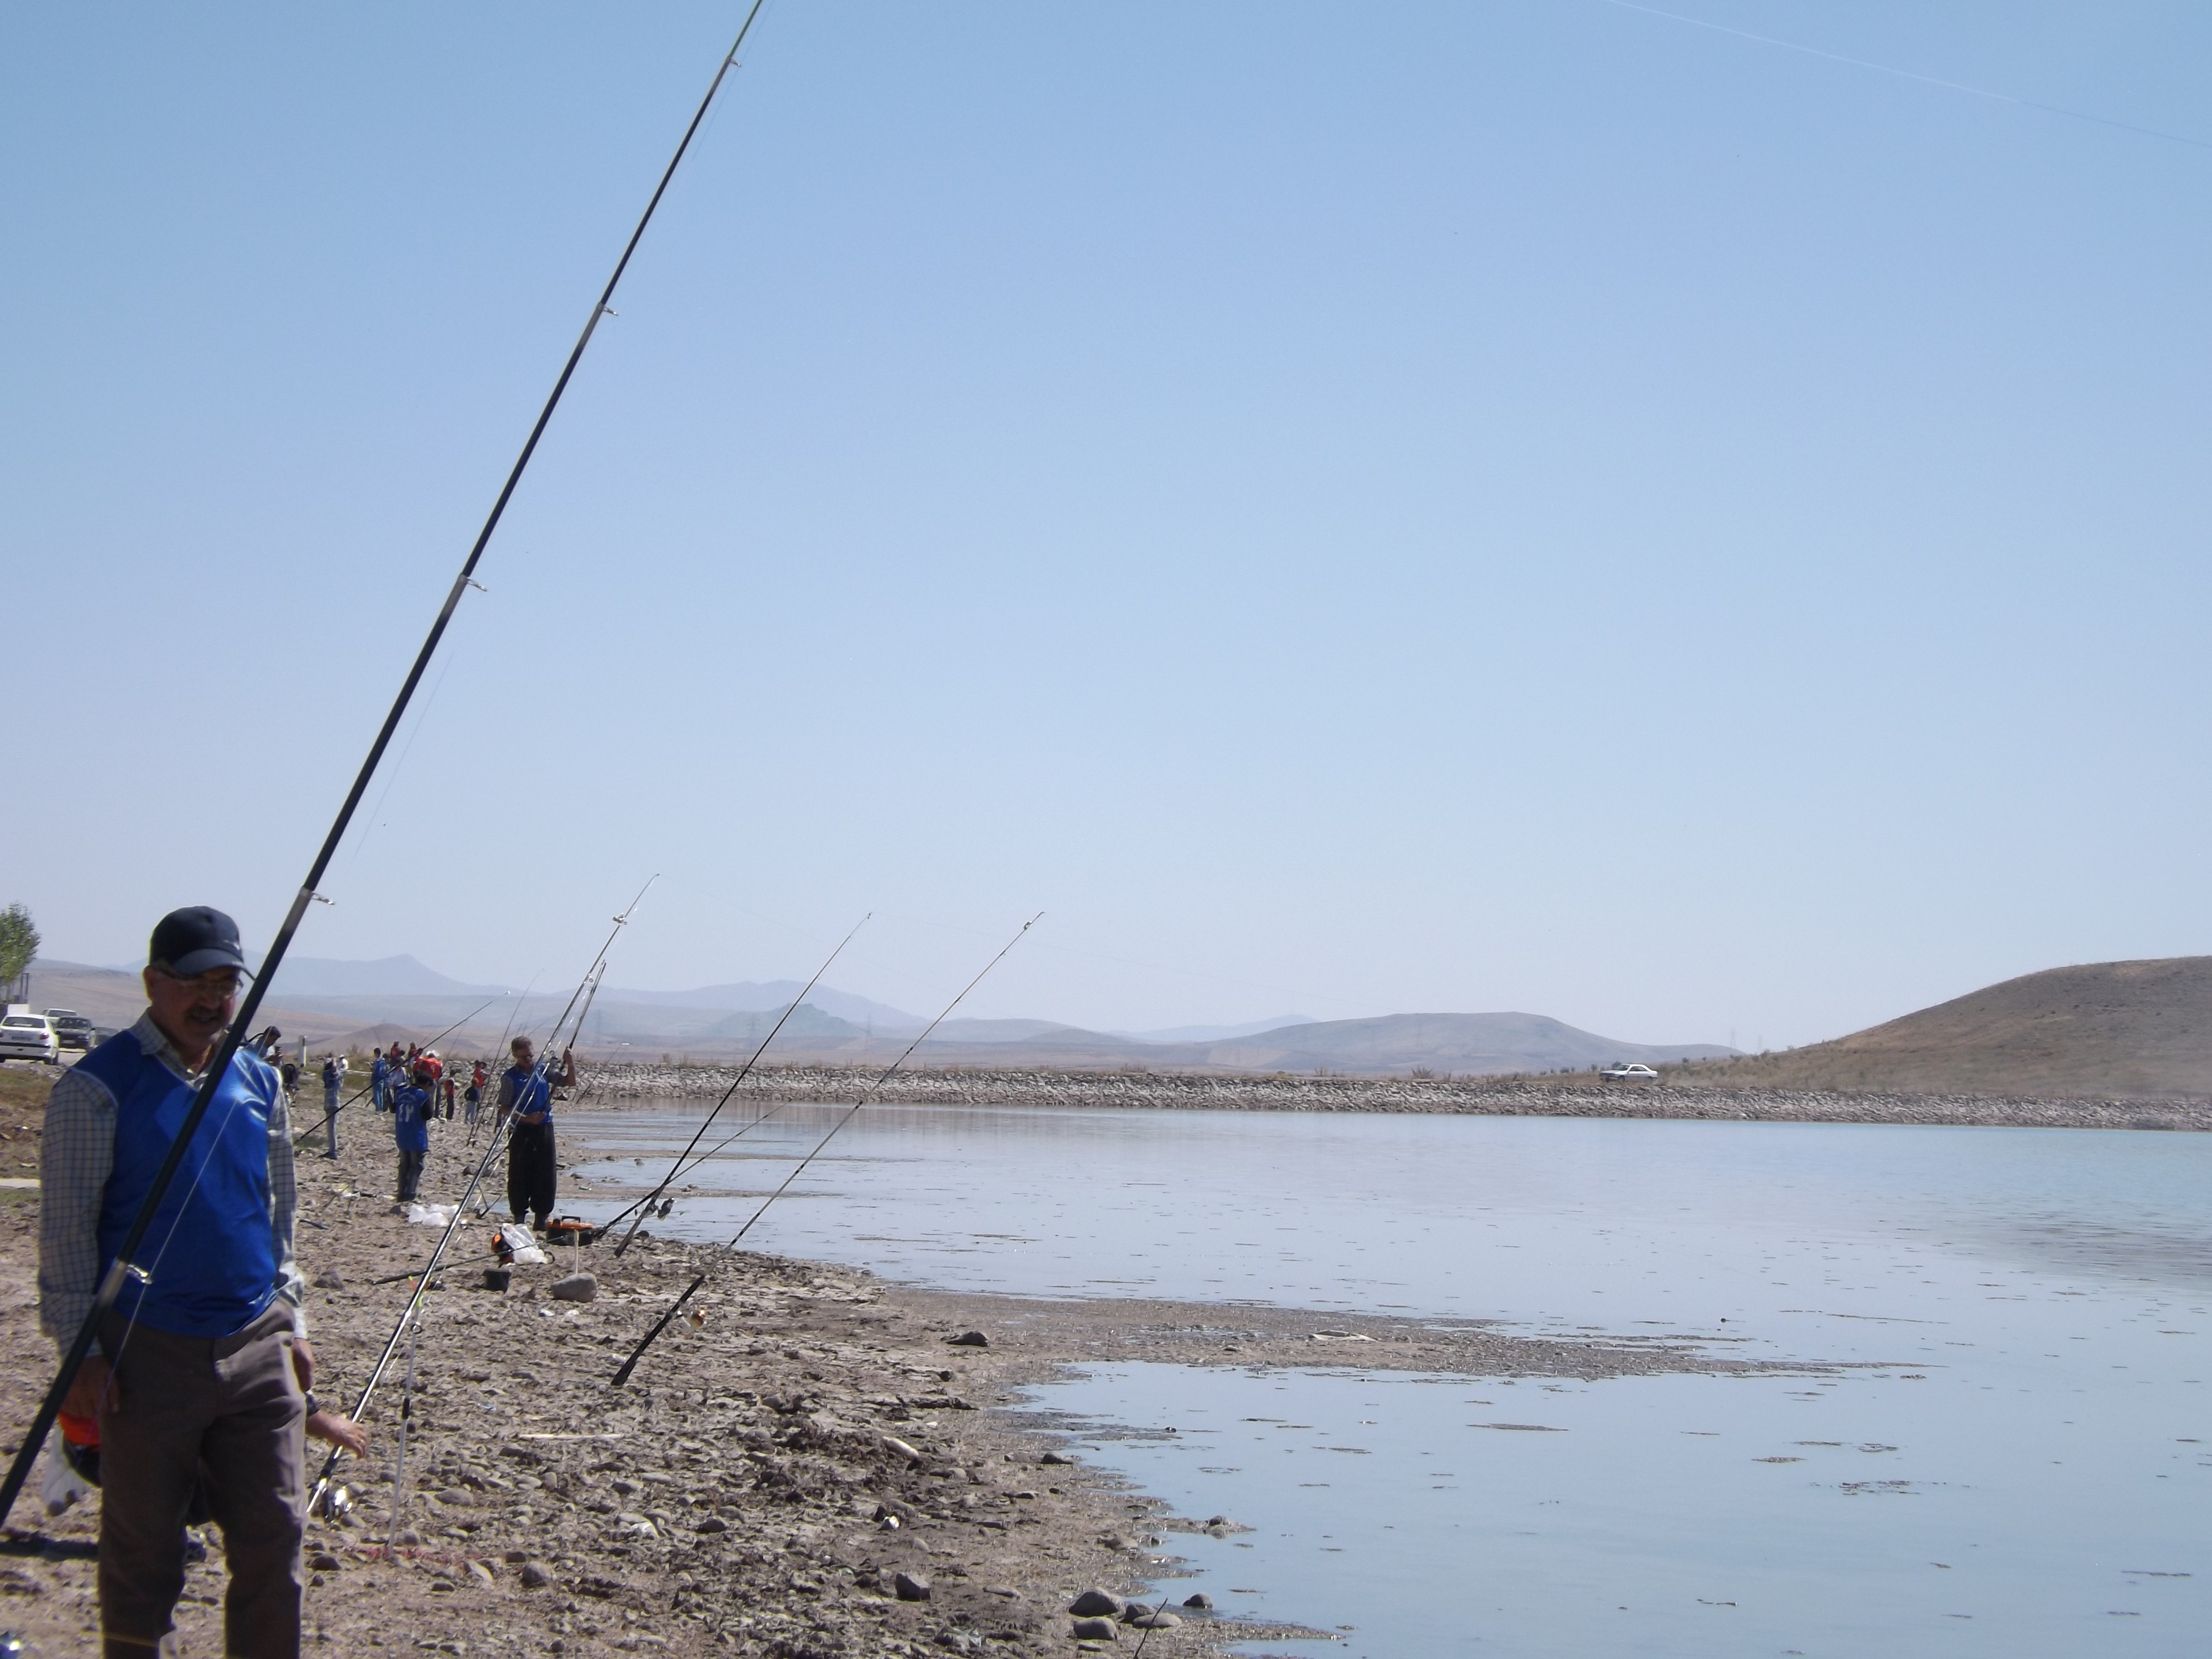 آوای ورزقان: برگزاری همایش استانی ماهیگیری با قلاب در سد زرآباد ورزقان/ تصویری